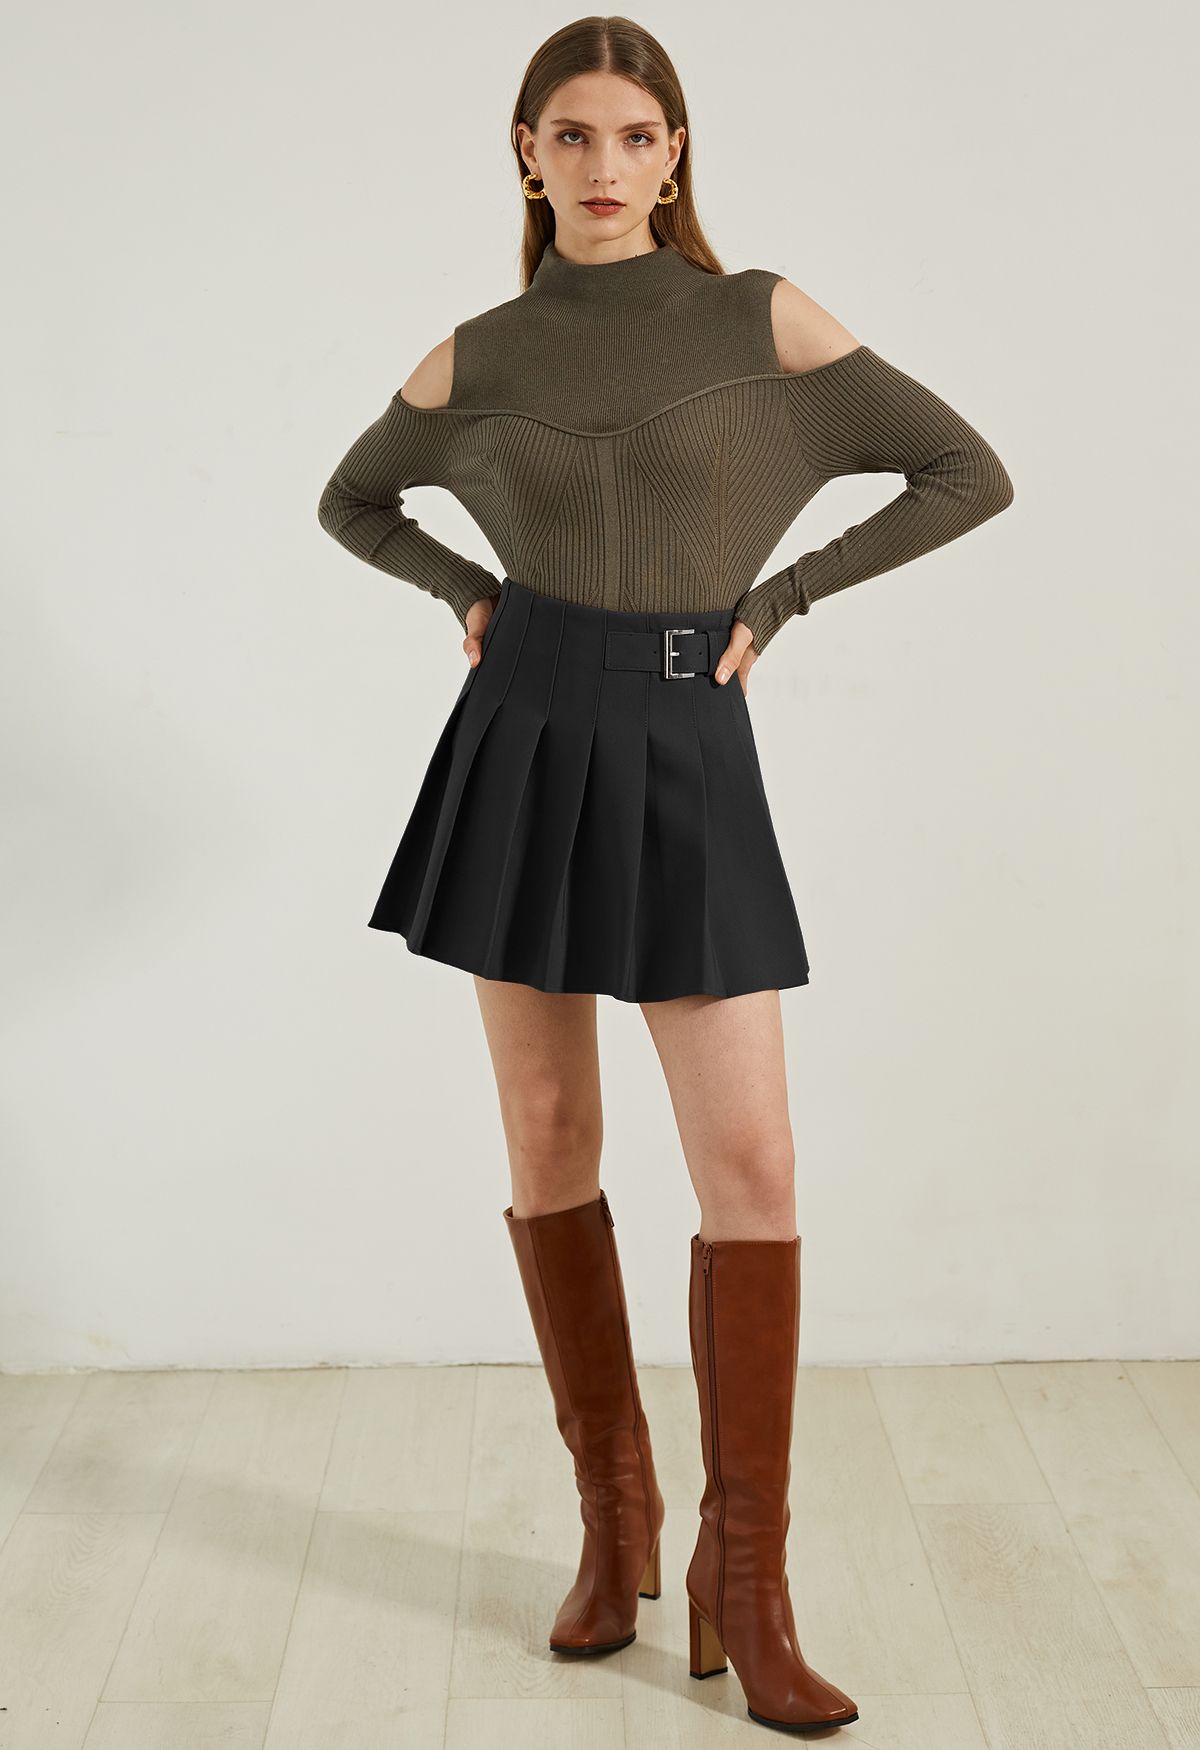 Minifalda plisada con cinturón en negro